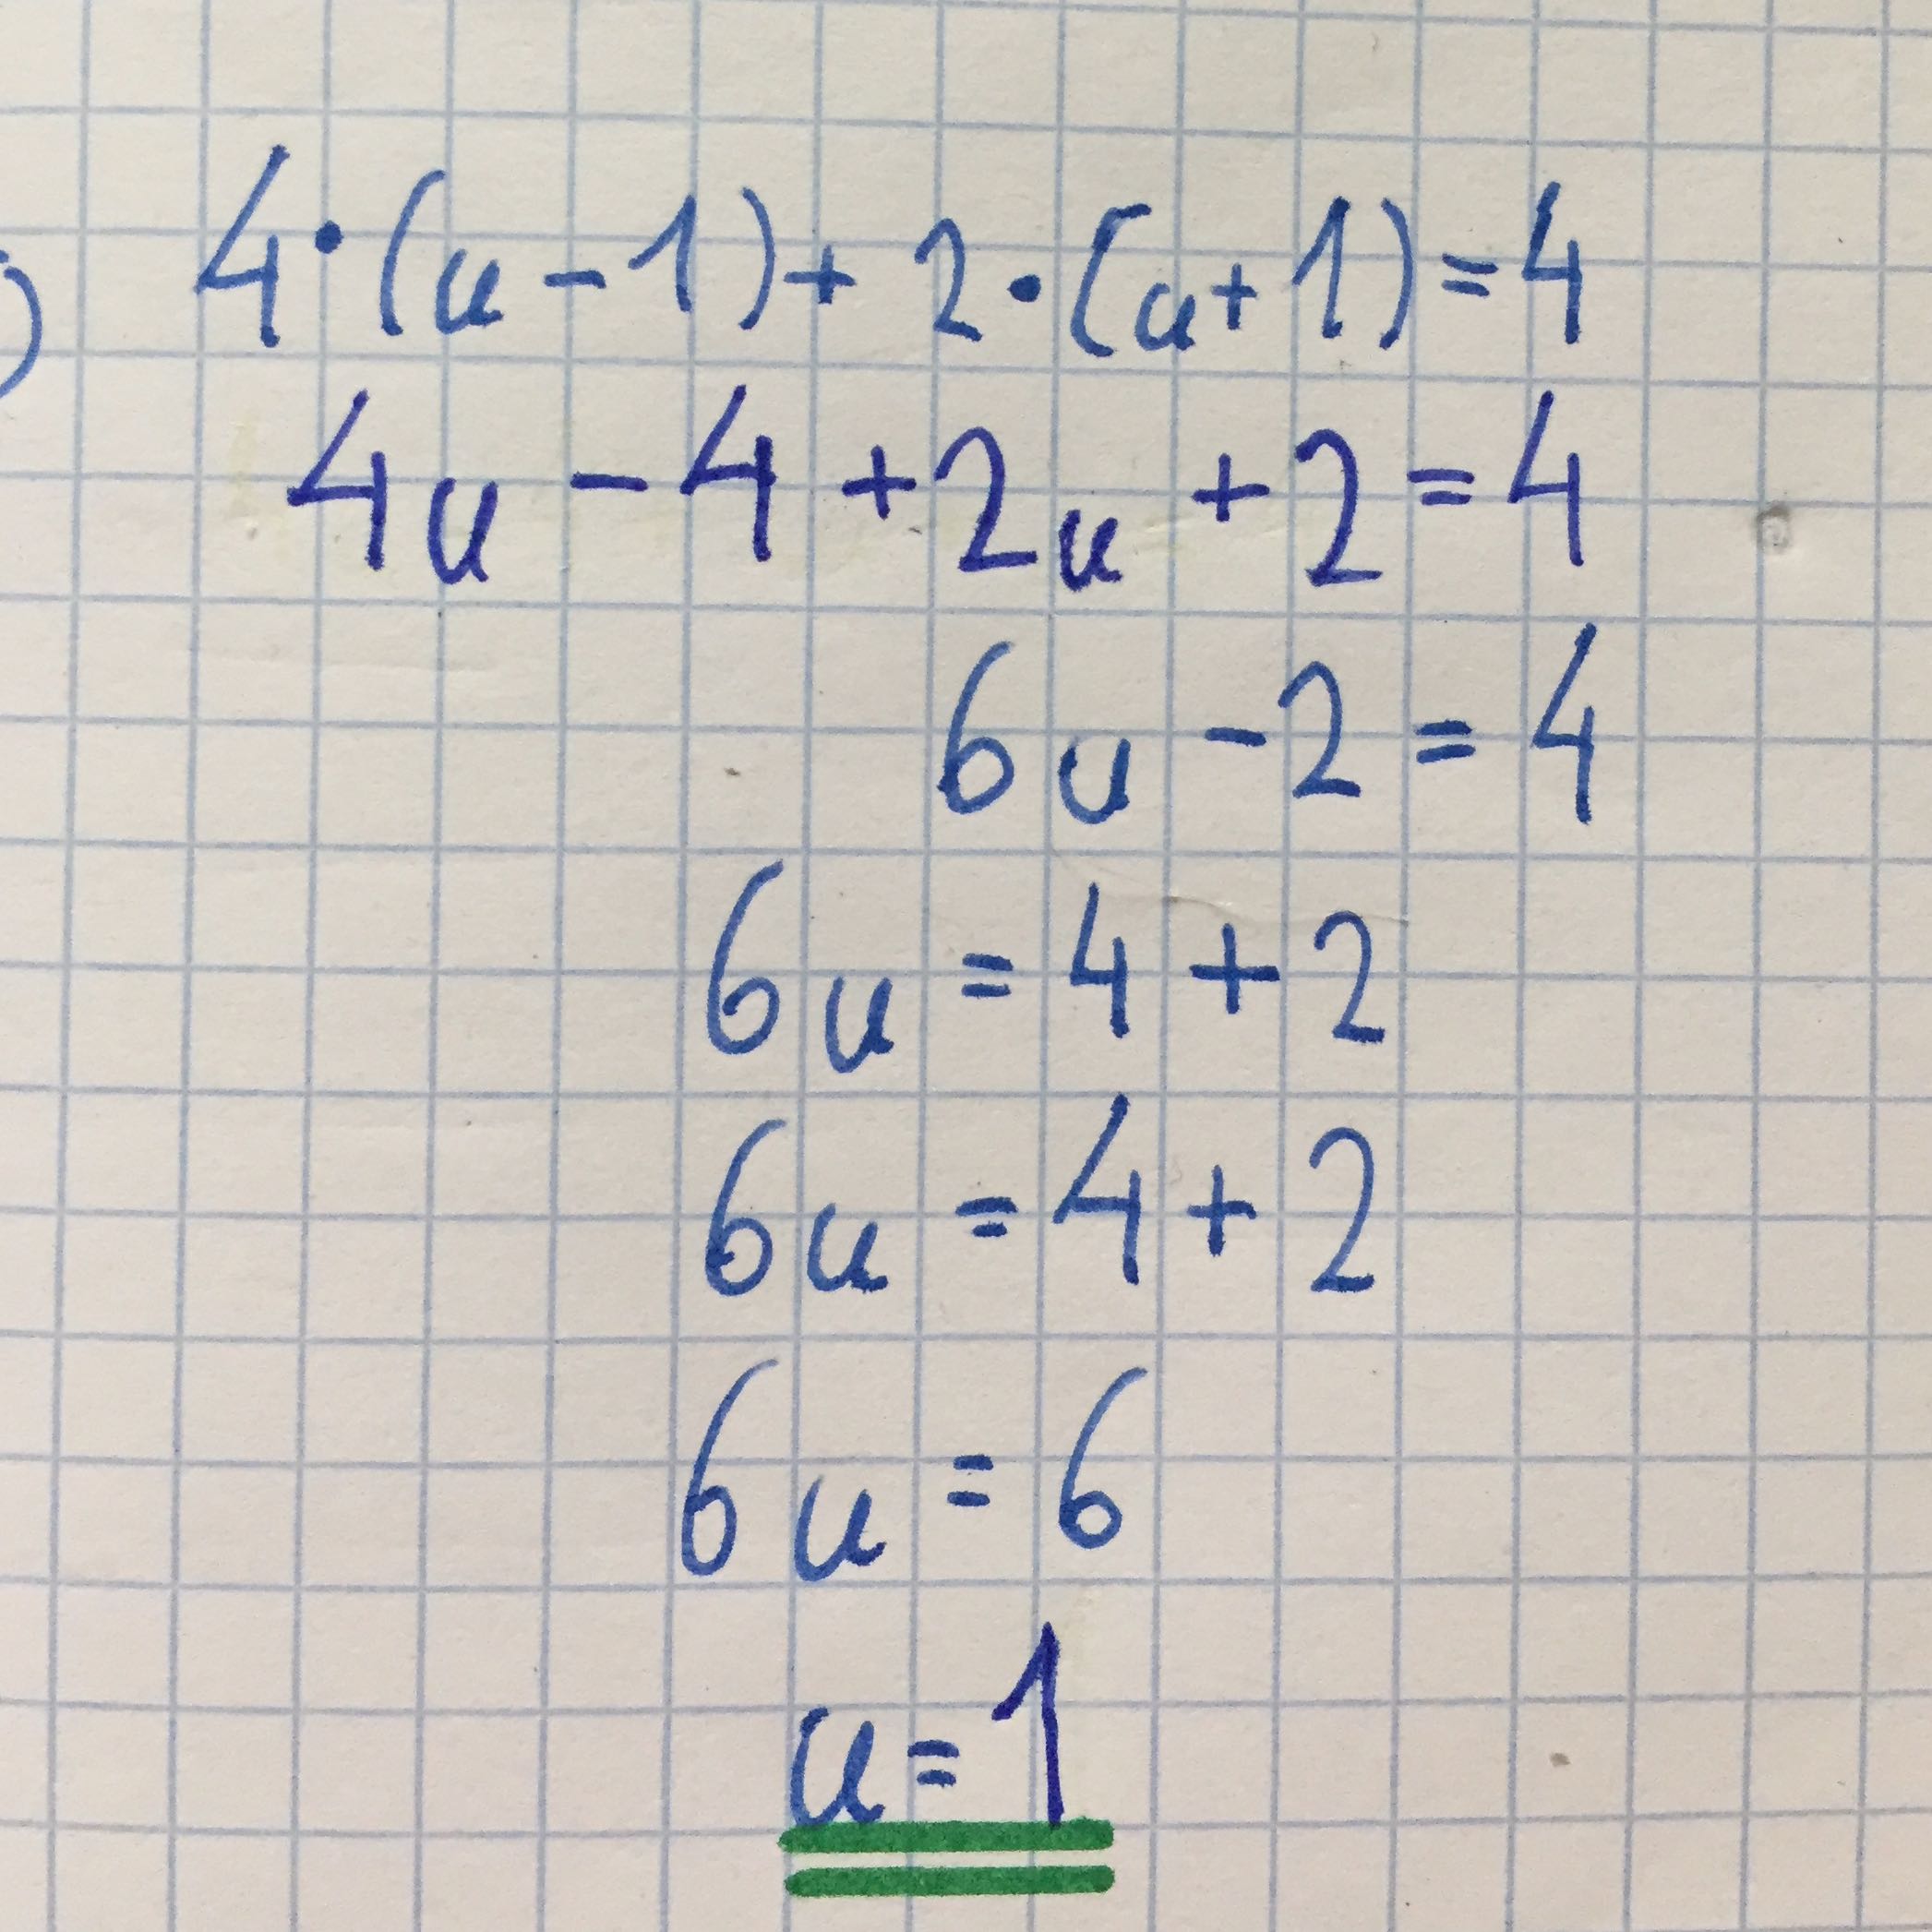 Probe für Lineare Gleichung? (Schule, Mathematik, Gleichungen)